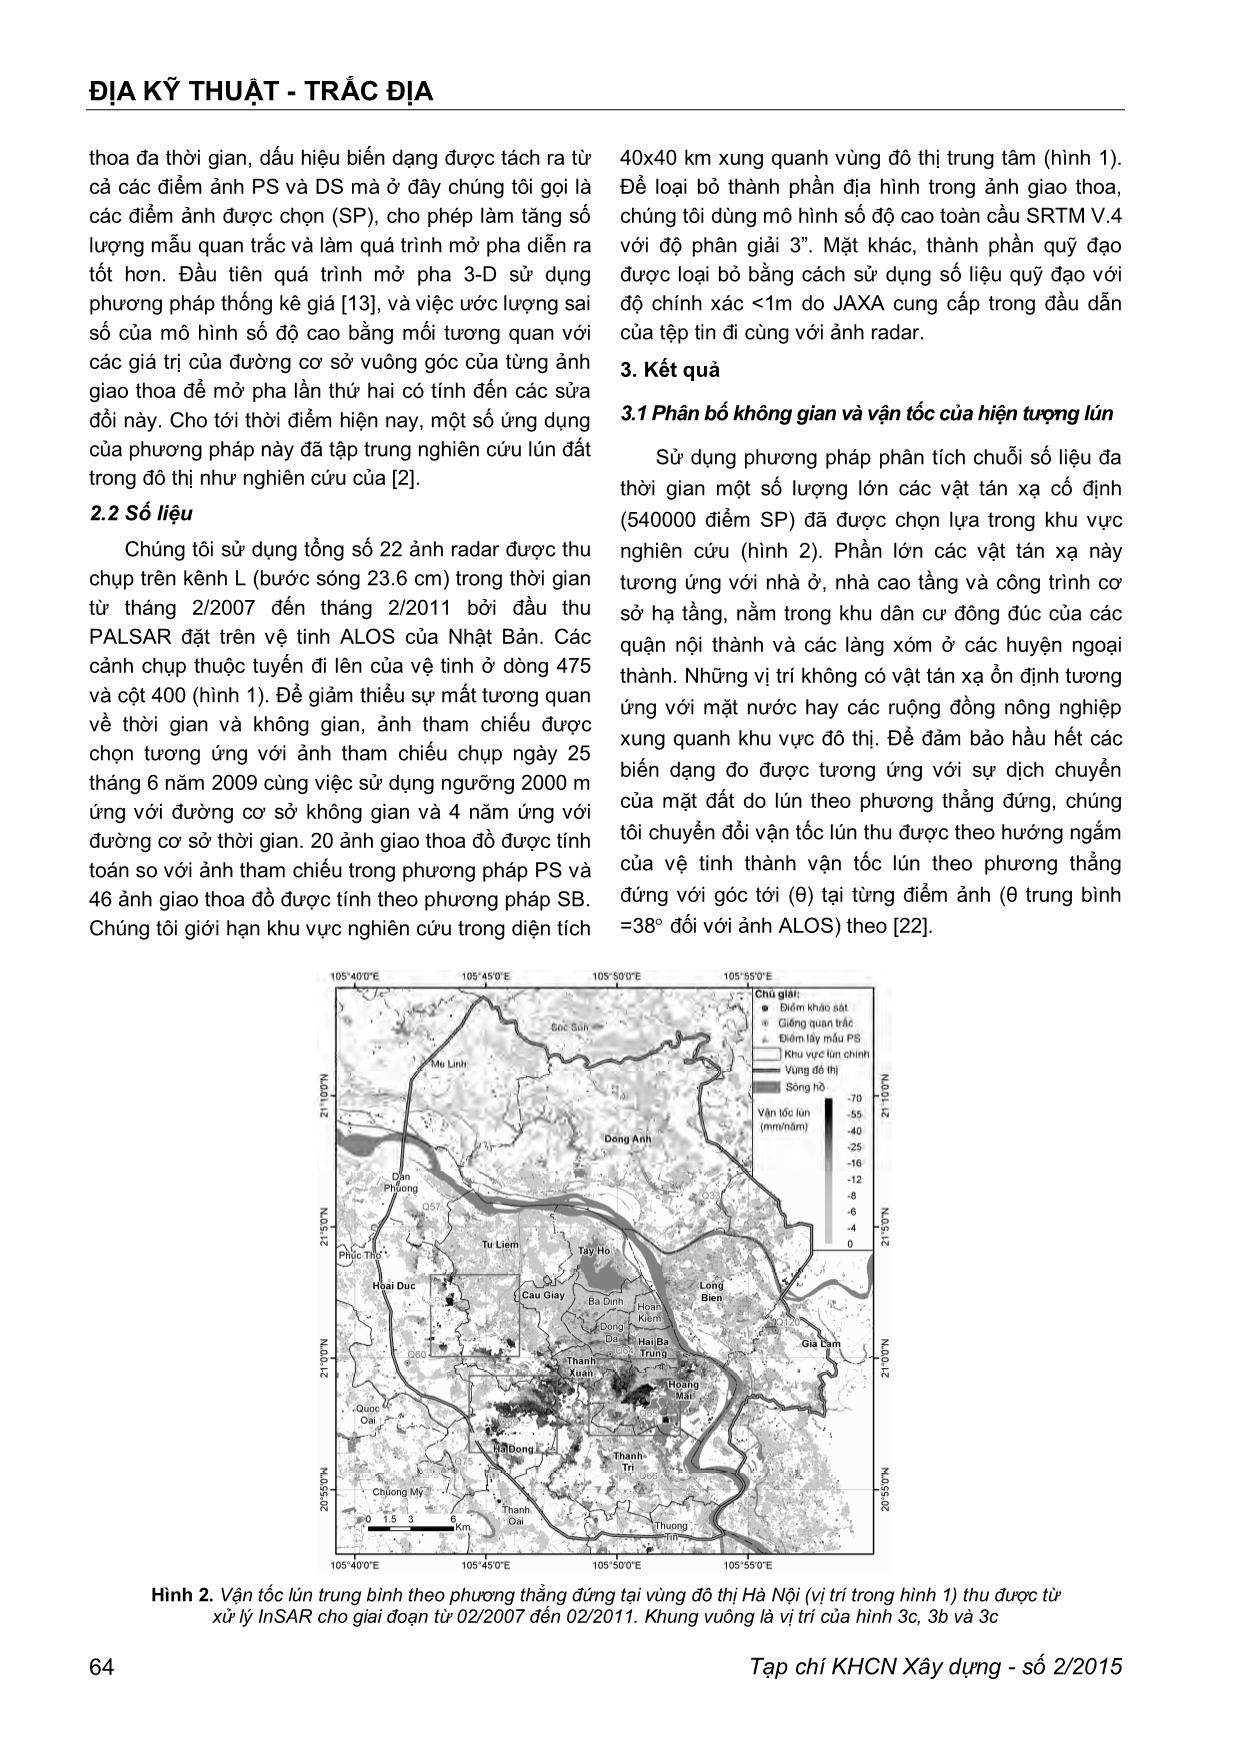 Áp dụng phương pháp giao thoa radar để xác định hiện tượng lún đất trong vùng đô thị trung tâm thành phố Hà Nội trang 4